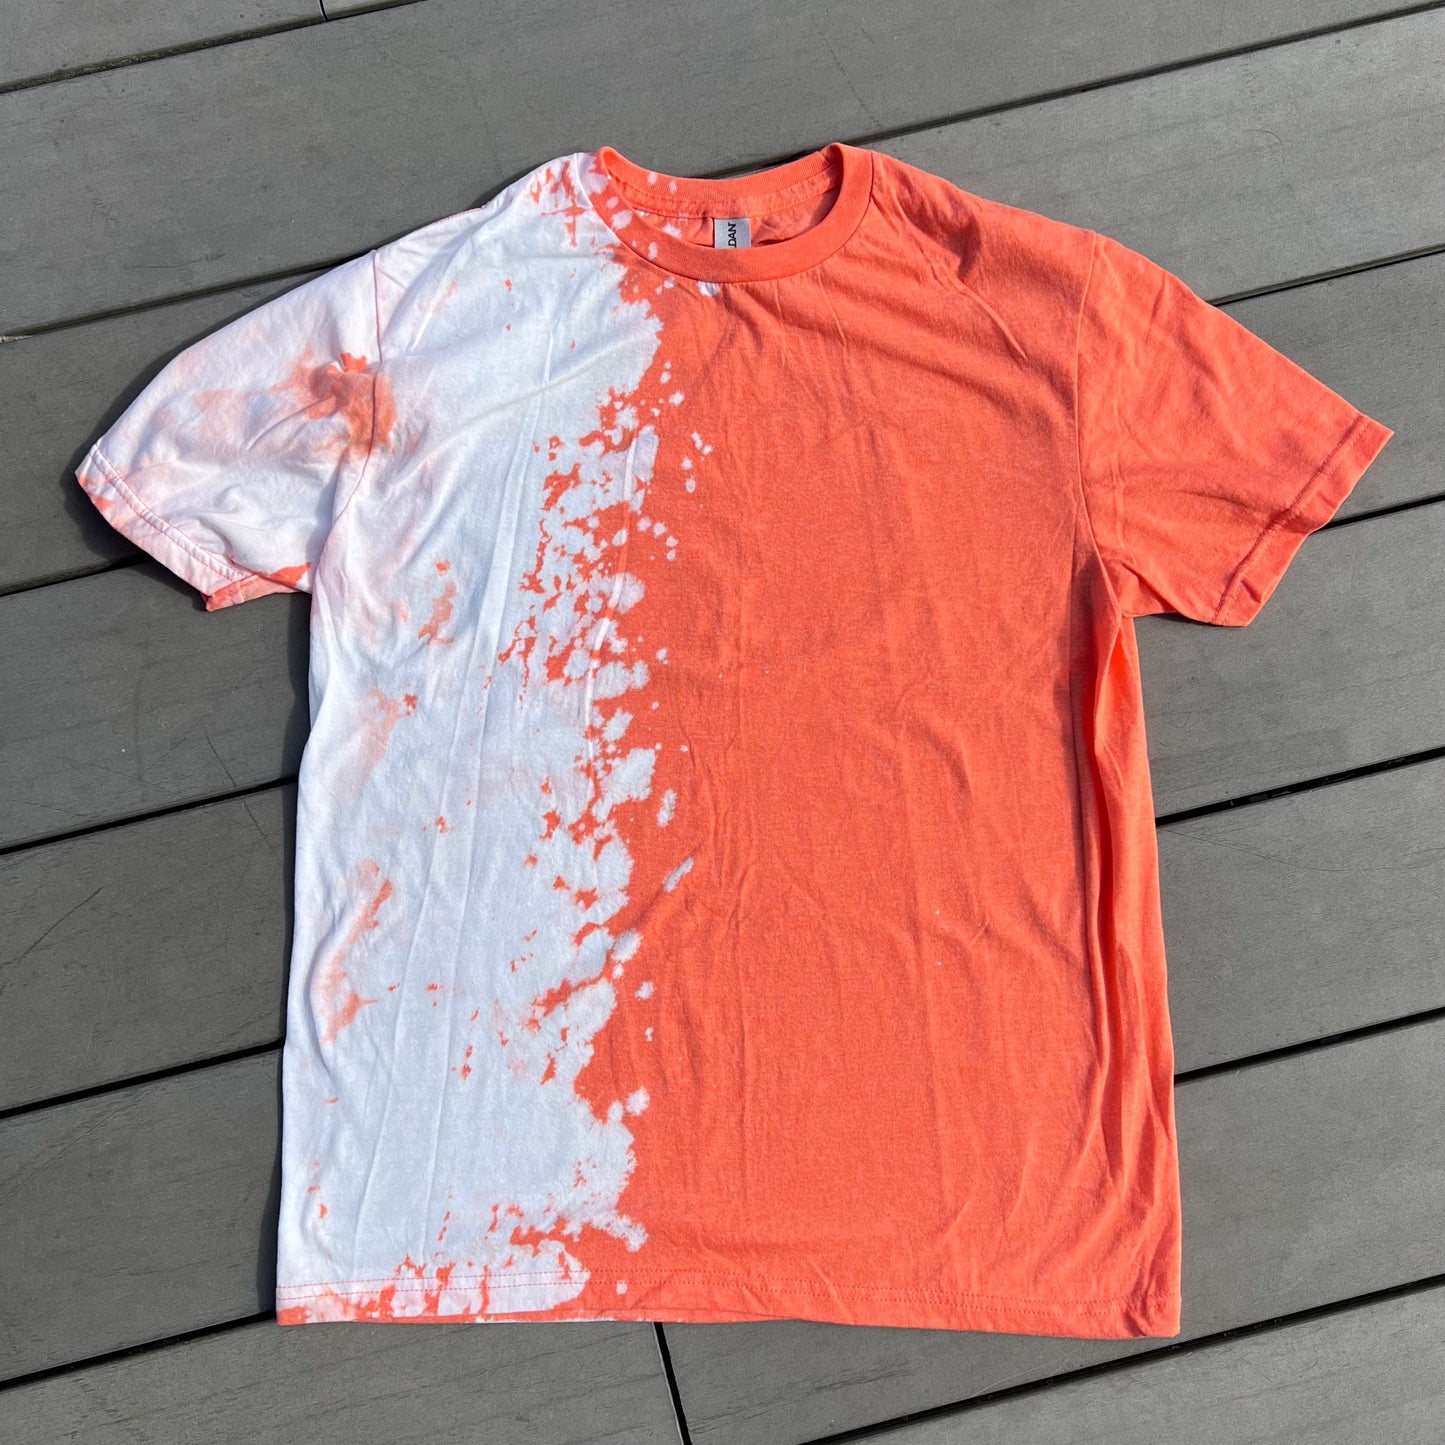 Bleach Splatter T-Shirts